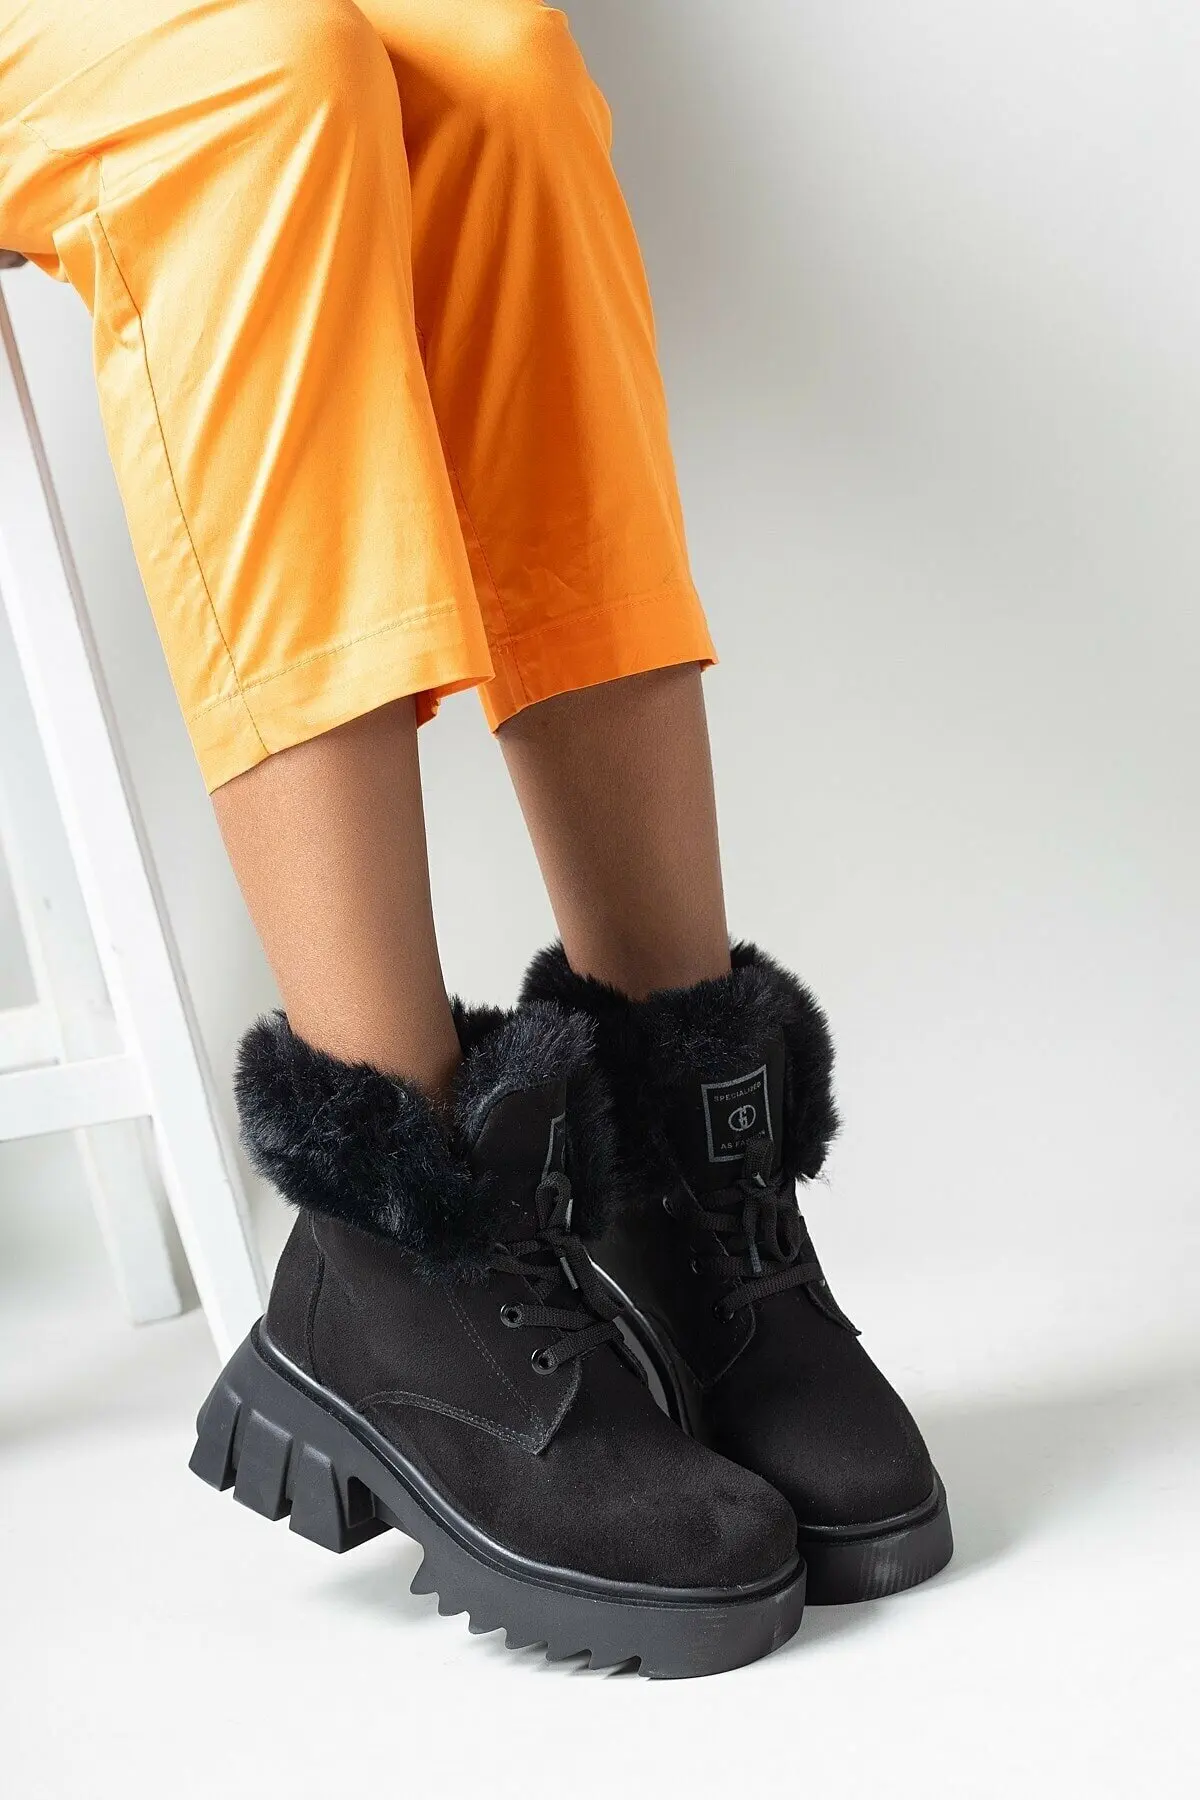 

Черные замшевые женские меховые сапоги 2021 зимние сапоги теплые ботильоны модные стильные удобные на низком каблуке